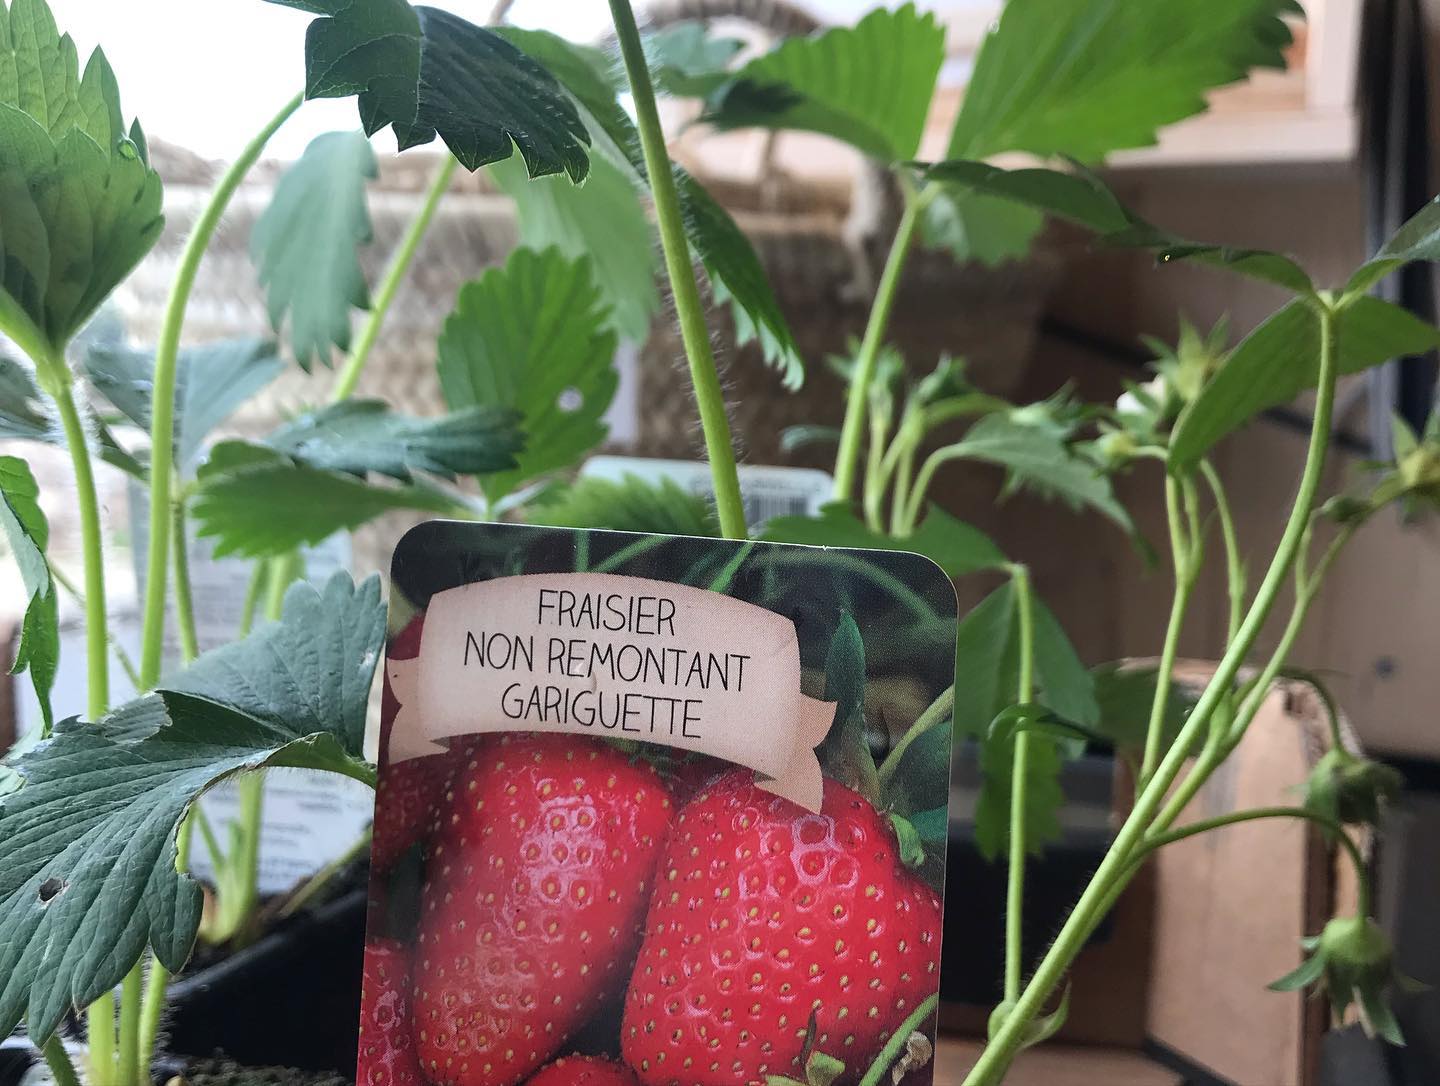 Arrivage du week-end ! Ça y est c’est le printemps ! Premiers plants de fraise 🍓 pour jardiner ce week-end !